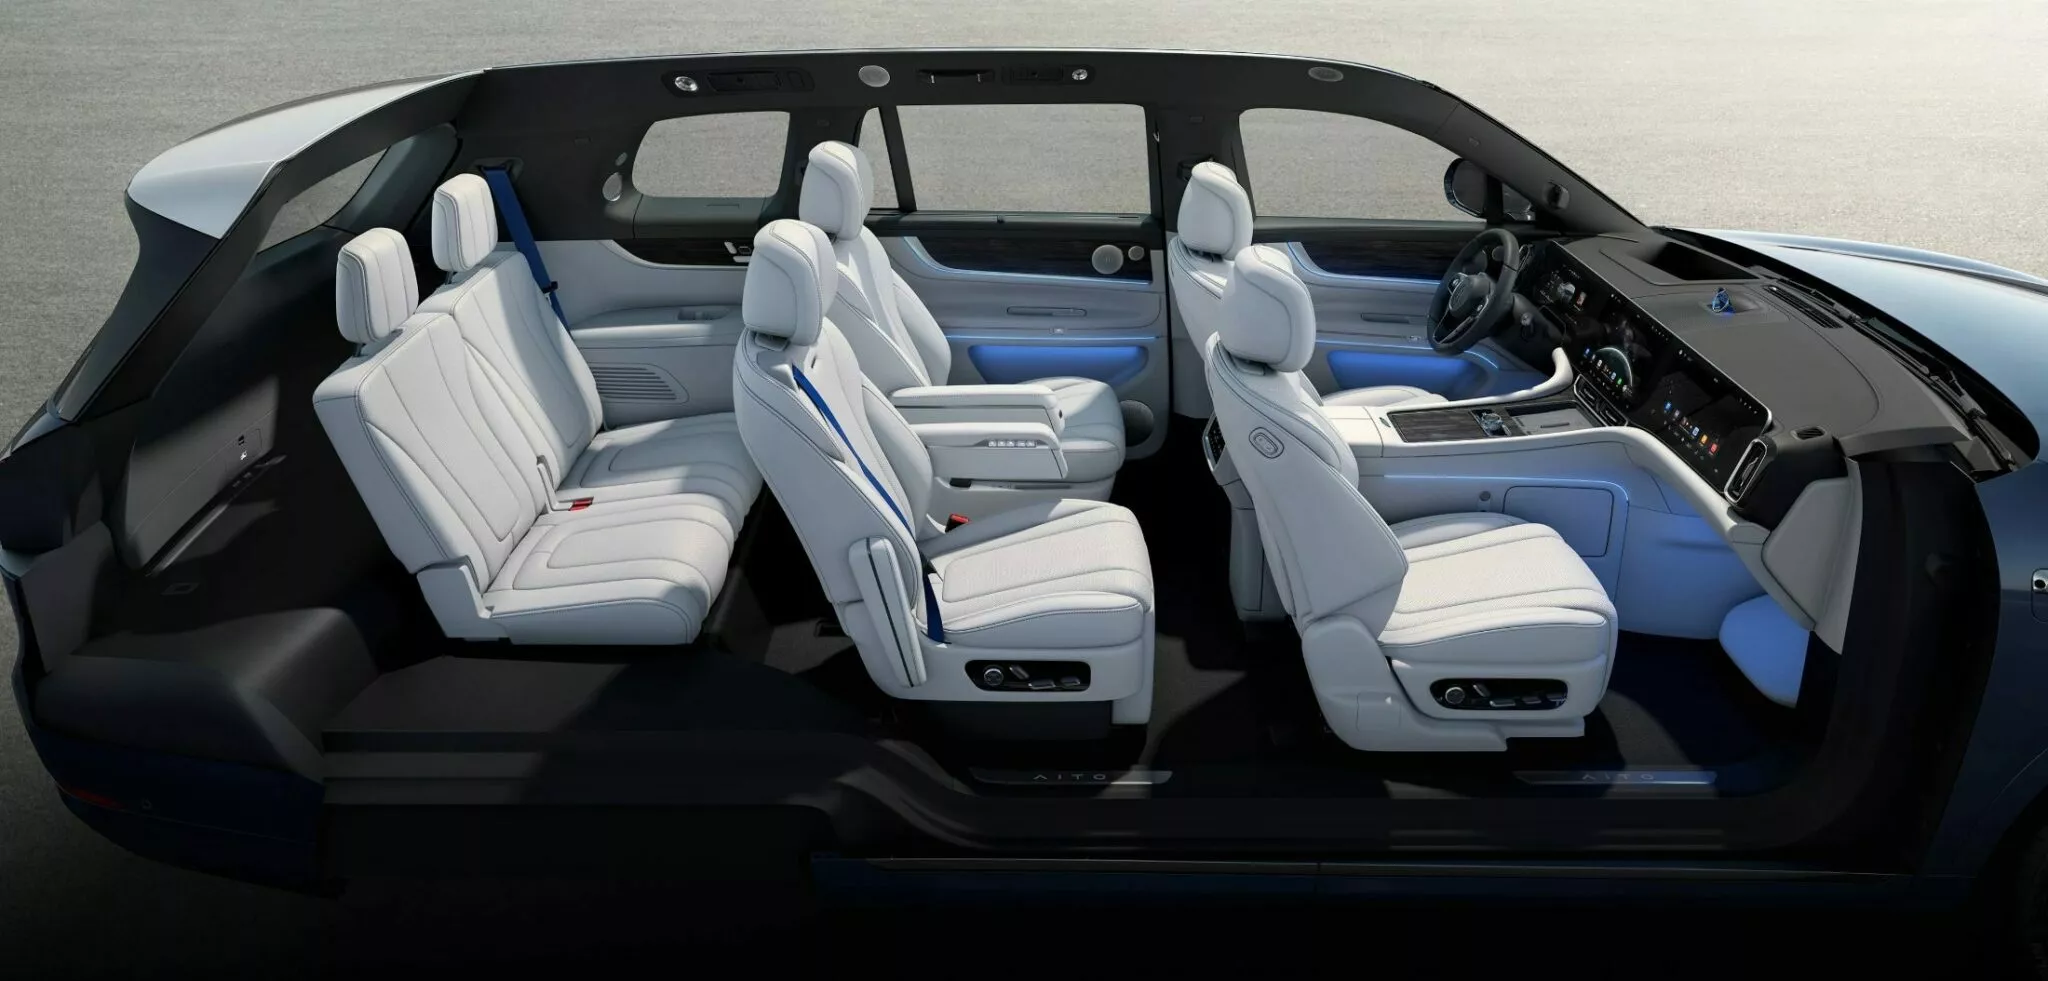 شركة هواوي تكشف عن سيارة SUV كهربائية فاخرة بشاشة سينمائية وقوة 530 حصان 16